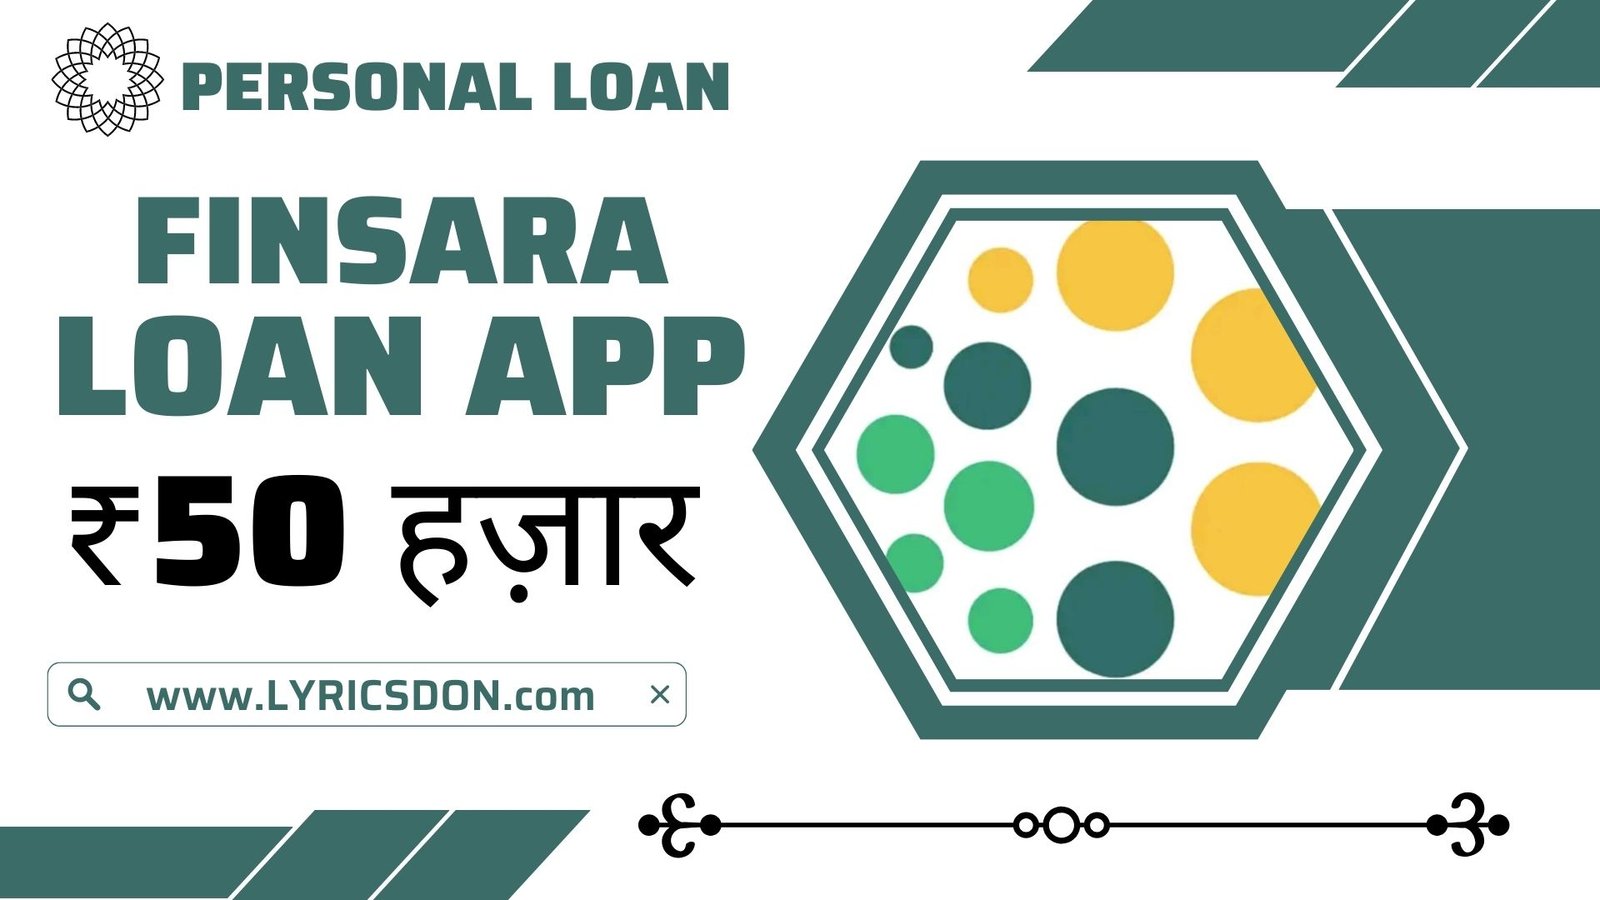 FINSARA Loan App Loan Amount